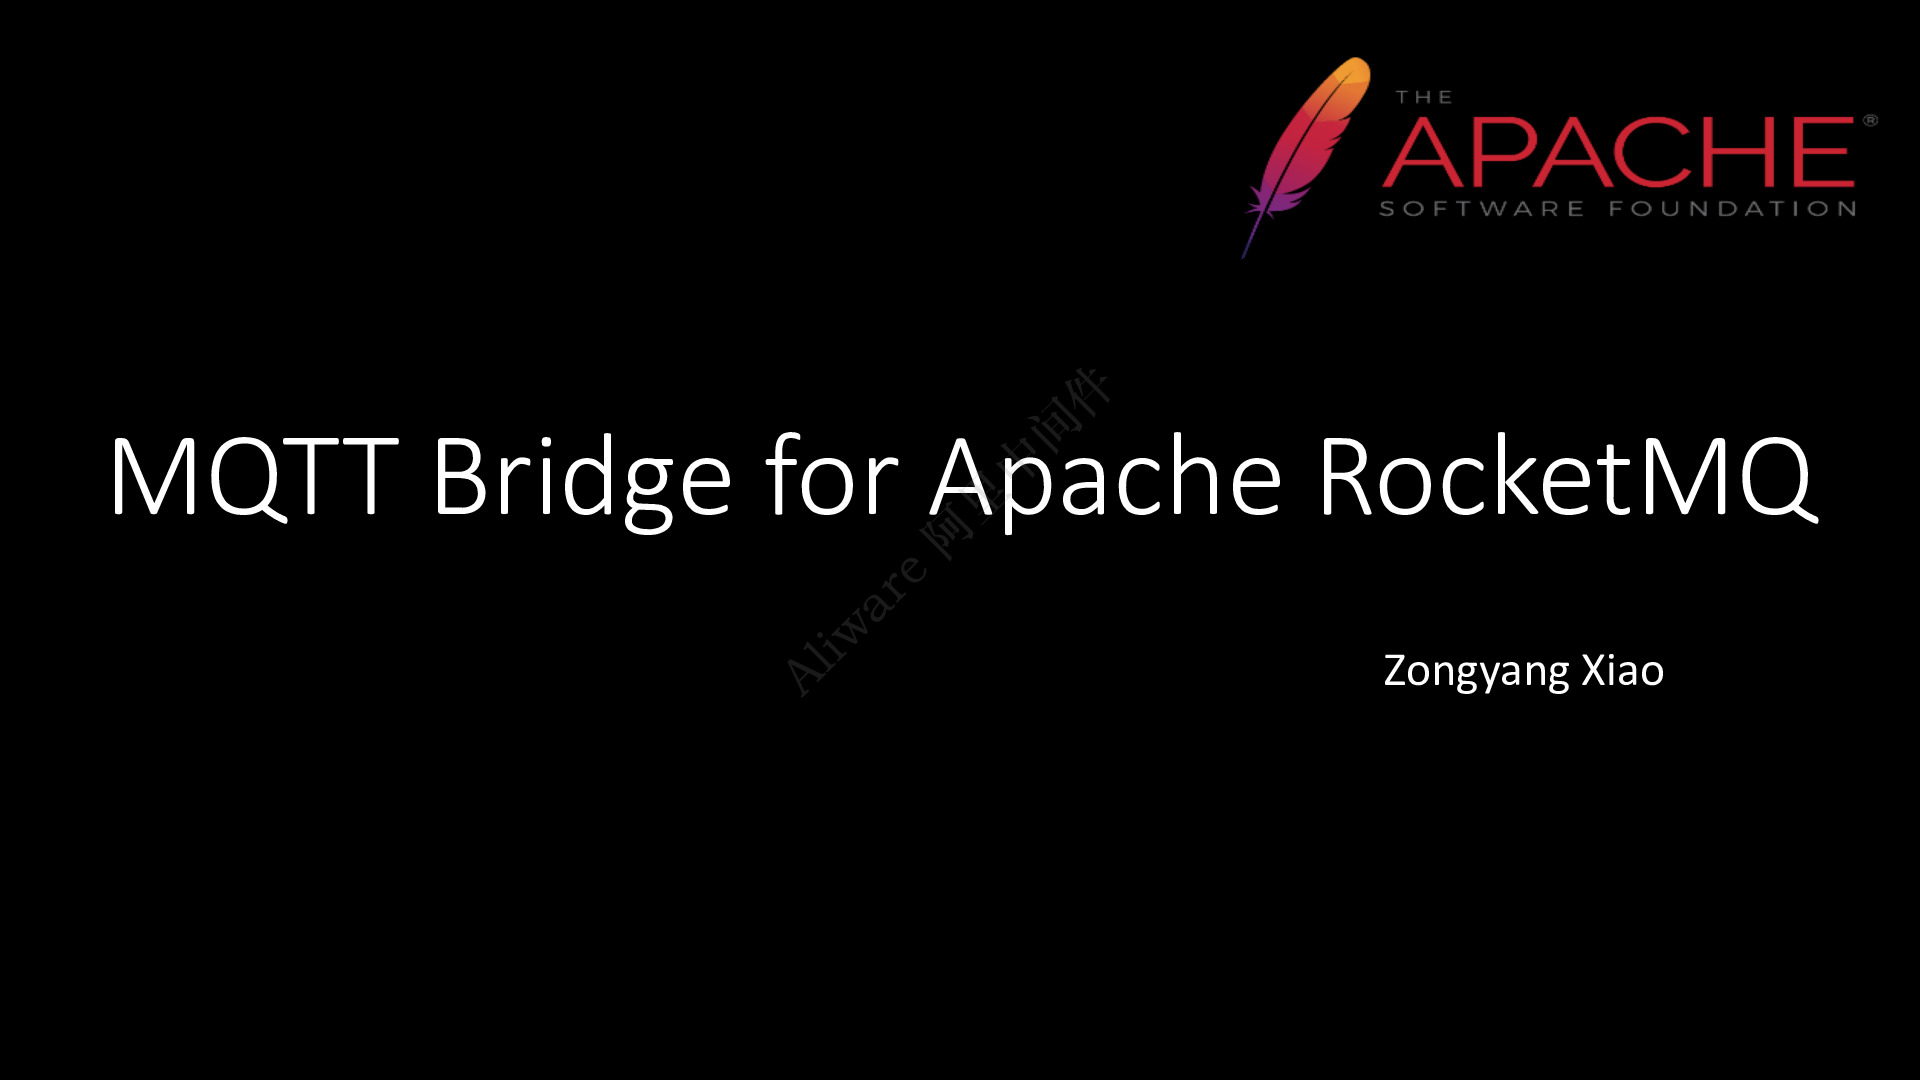 Aliware_Open_Source_北京站_PPT_MQTT_Bridge_for_Apache_RocketMQ_Final_肖宗阳